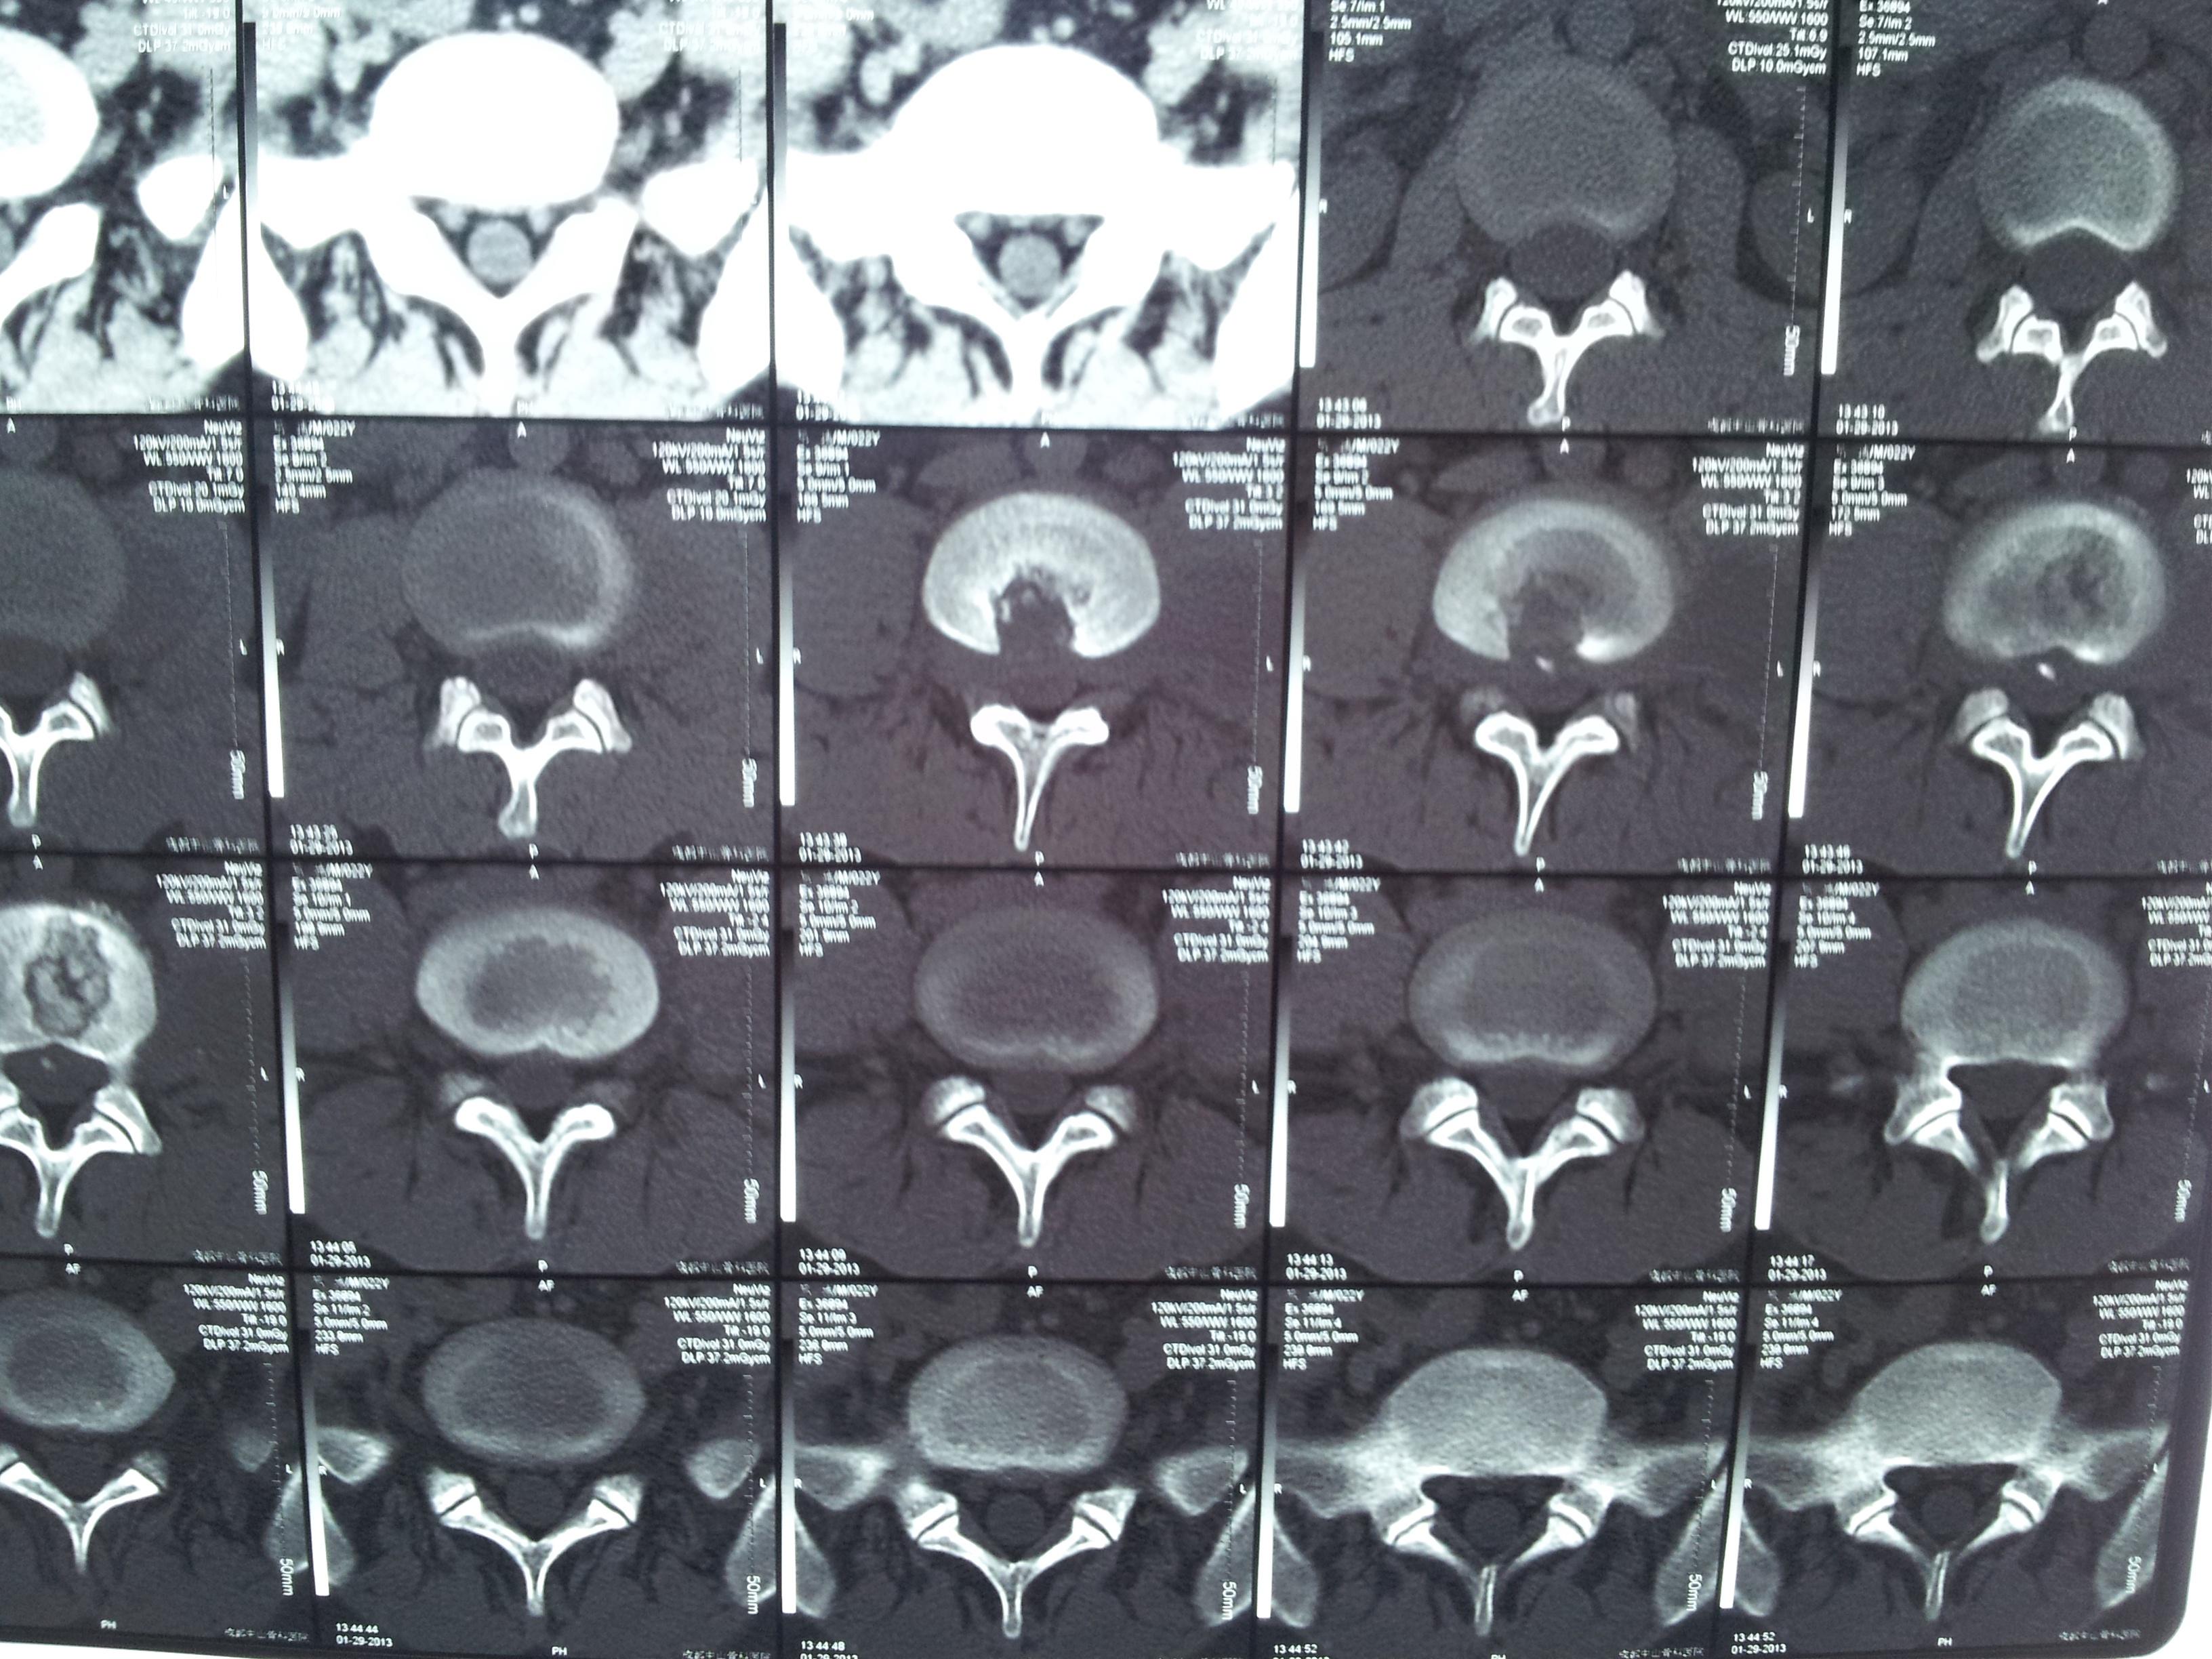 腰大肌脓肿CT图片图片